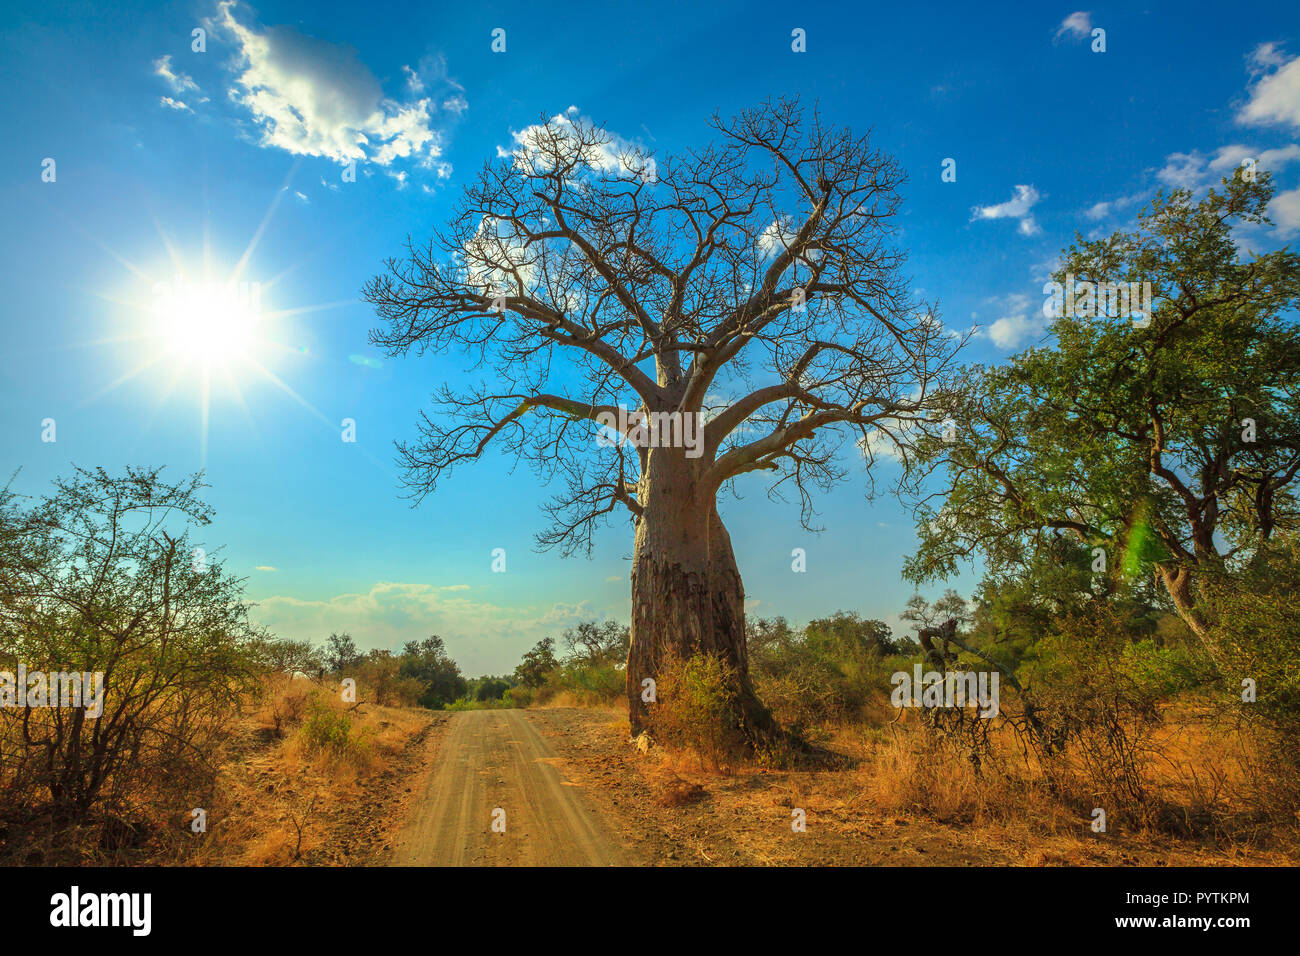 Baobab à Musina réserve naturelle, l'une des plus importantes collections de baobabs en Afrique du Sud. Commande de jeu en jeu du Limpopo et réserves naturelles. Journée ensoleillée avec ciel bleu. Banque D'Images